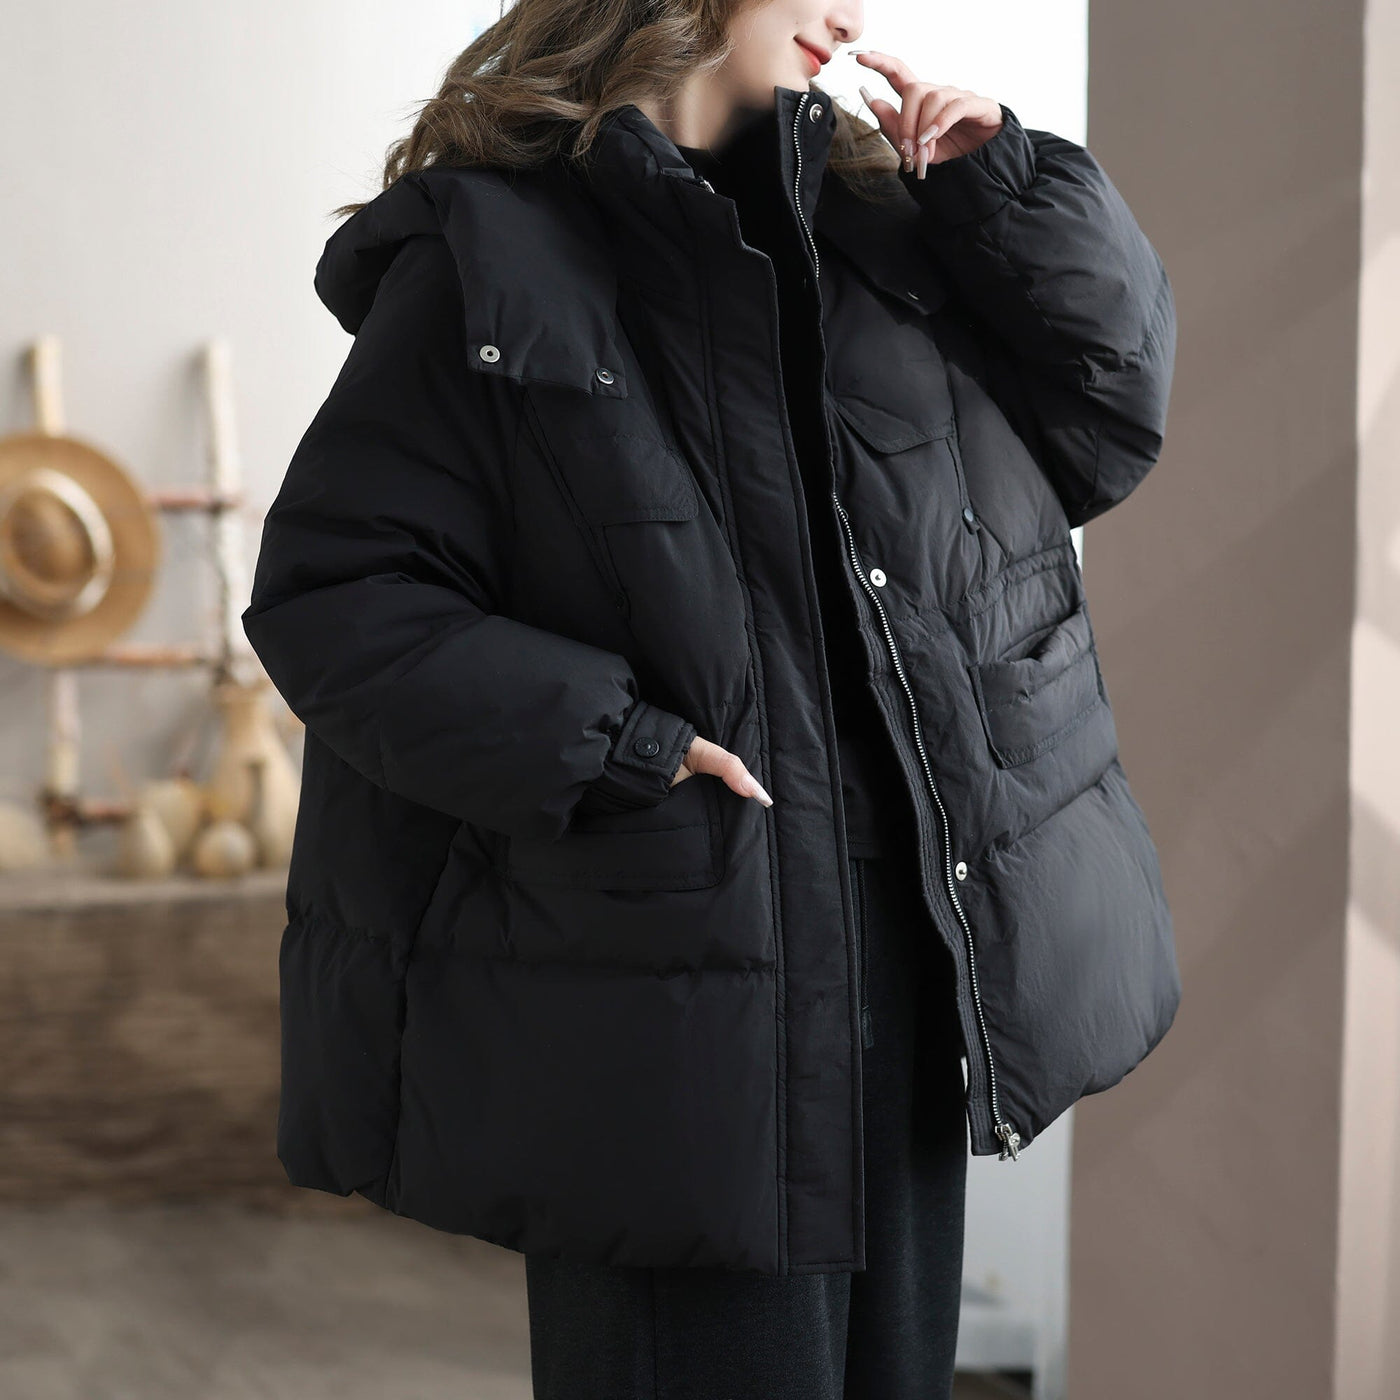 Women Winter Casual Warm Hooded Down Coat